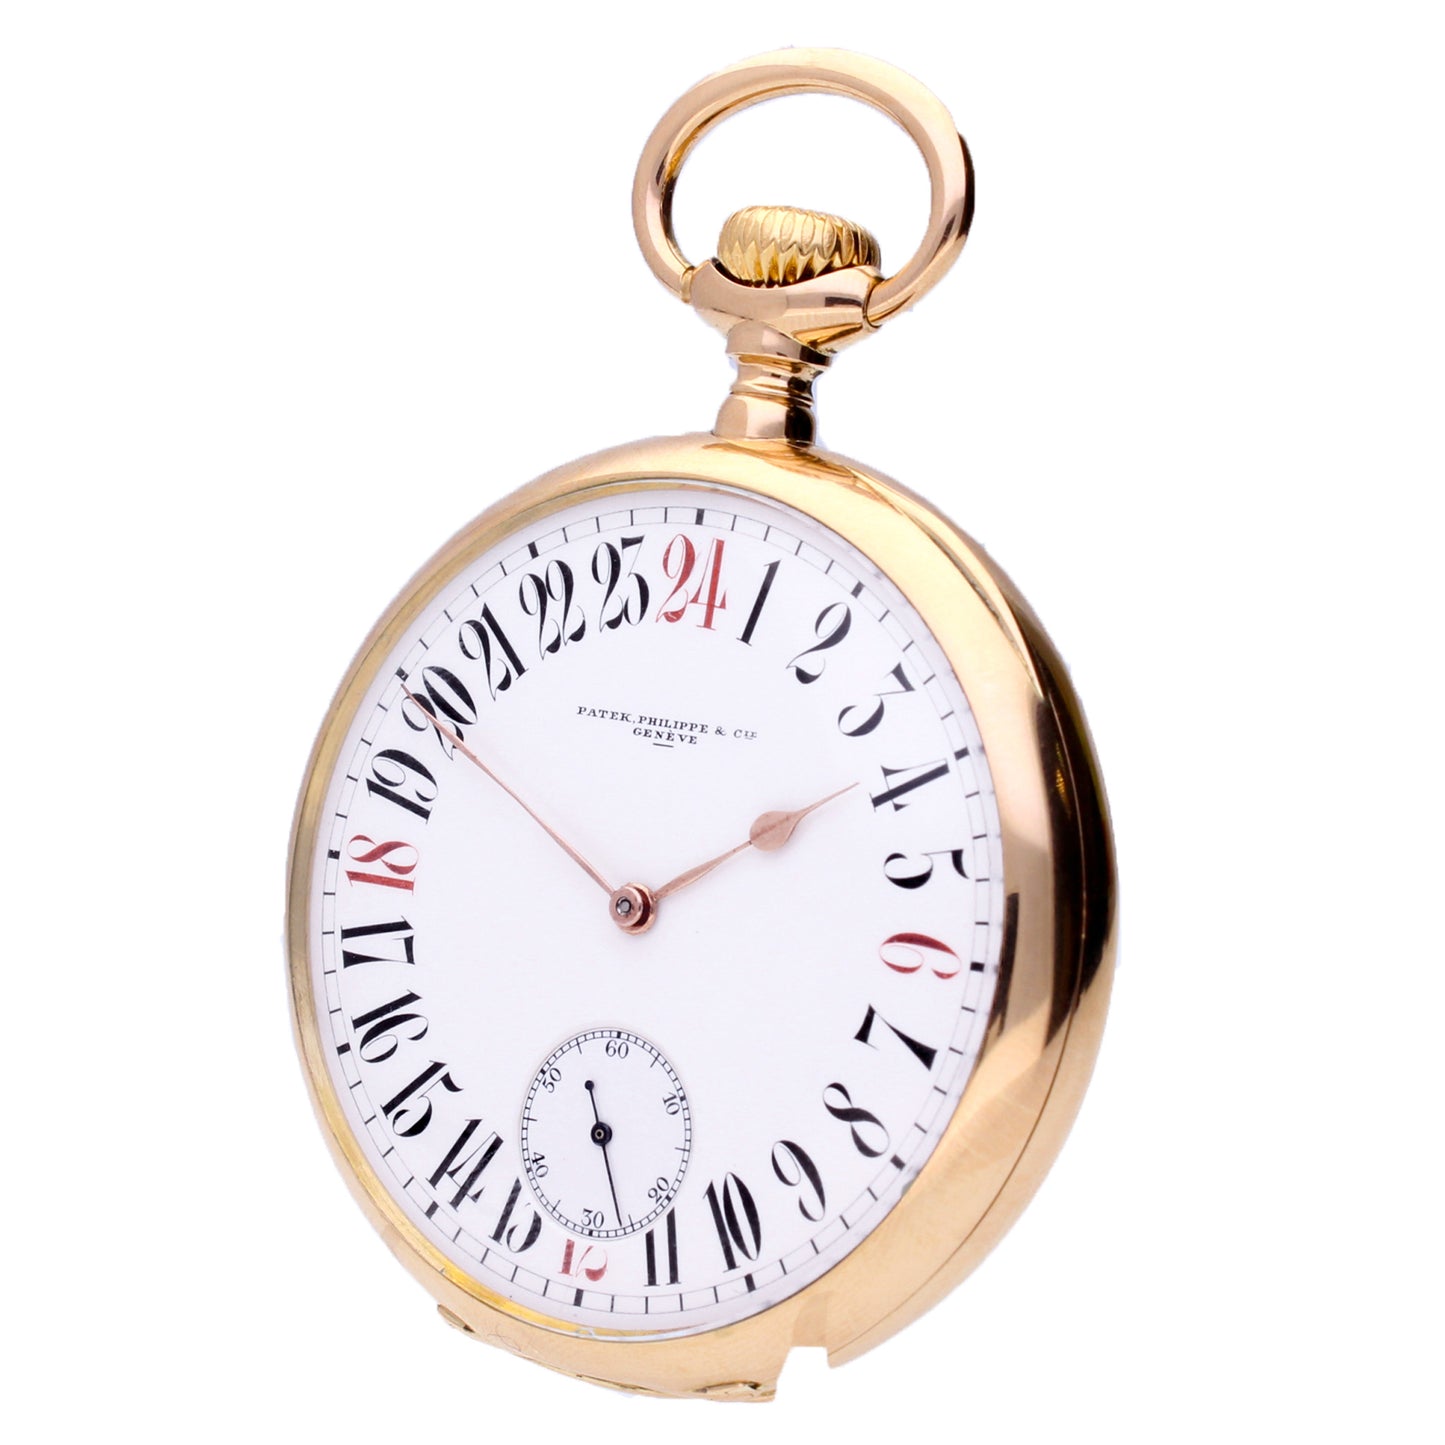 18ct rose gold Patek Philippe open face chronometro Gondolo pocket watch. Made 1915